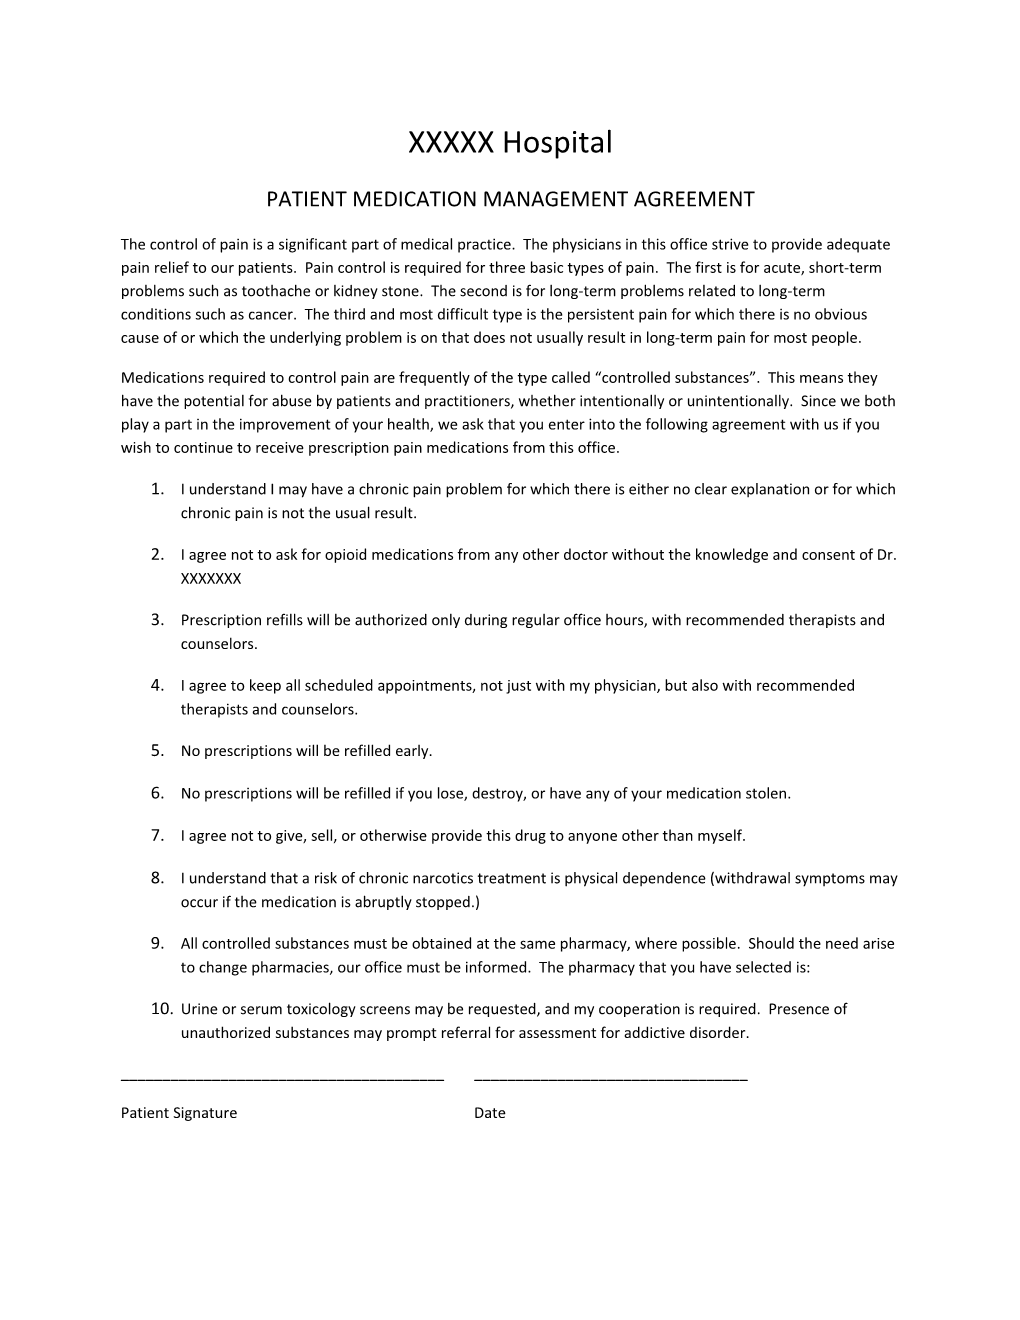 Patient Medication Management Agreement